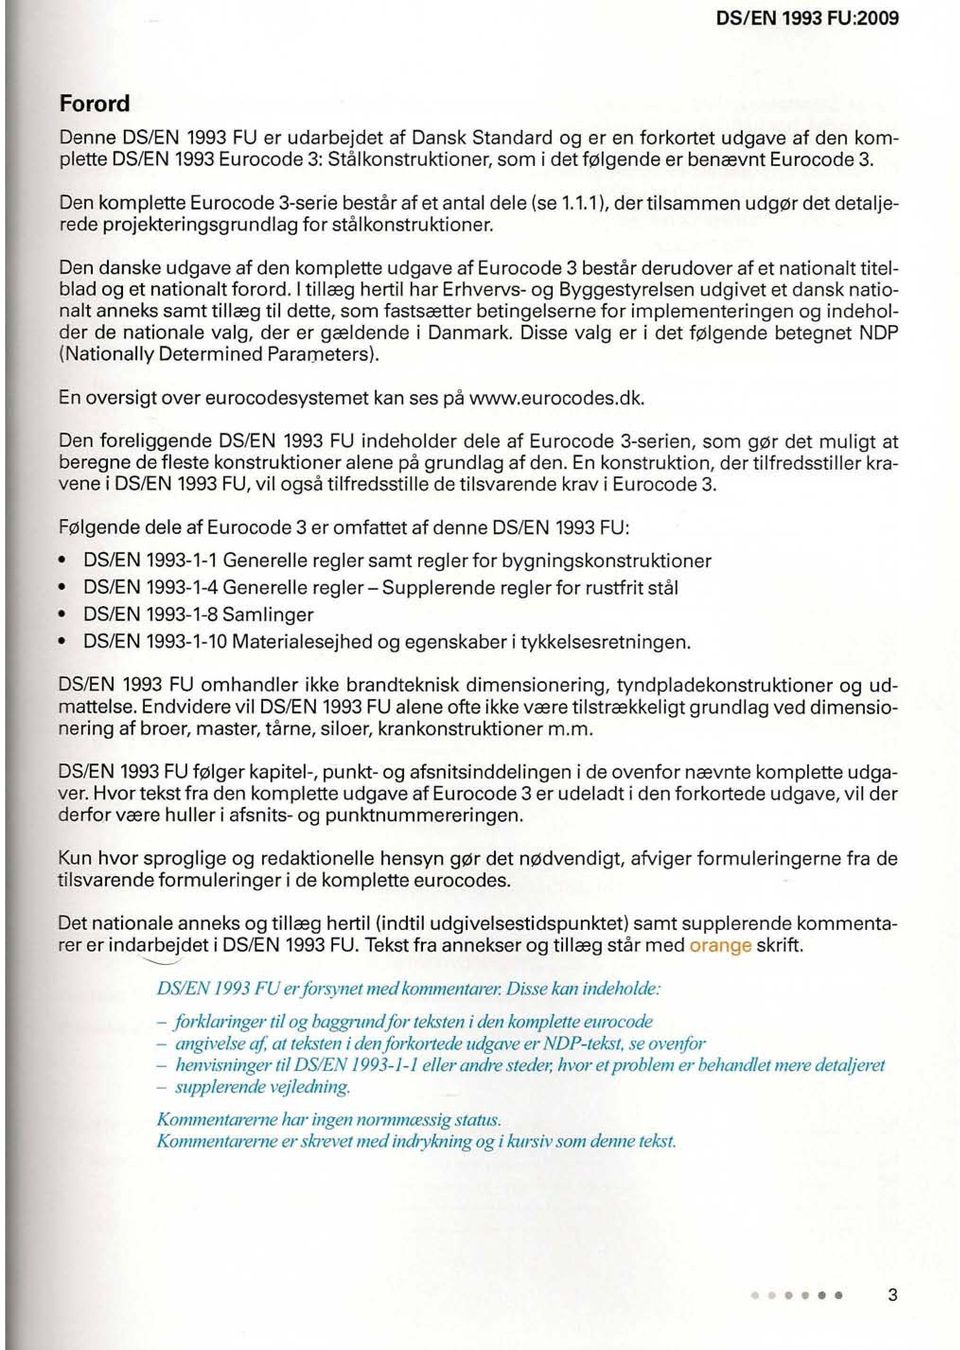 Den danske udgave af den komplette udgave af Eurocode 3 bestar derudover af et nationalt titelblad og et nationalt forord.